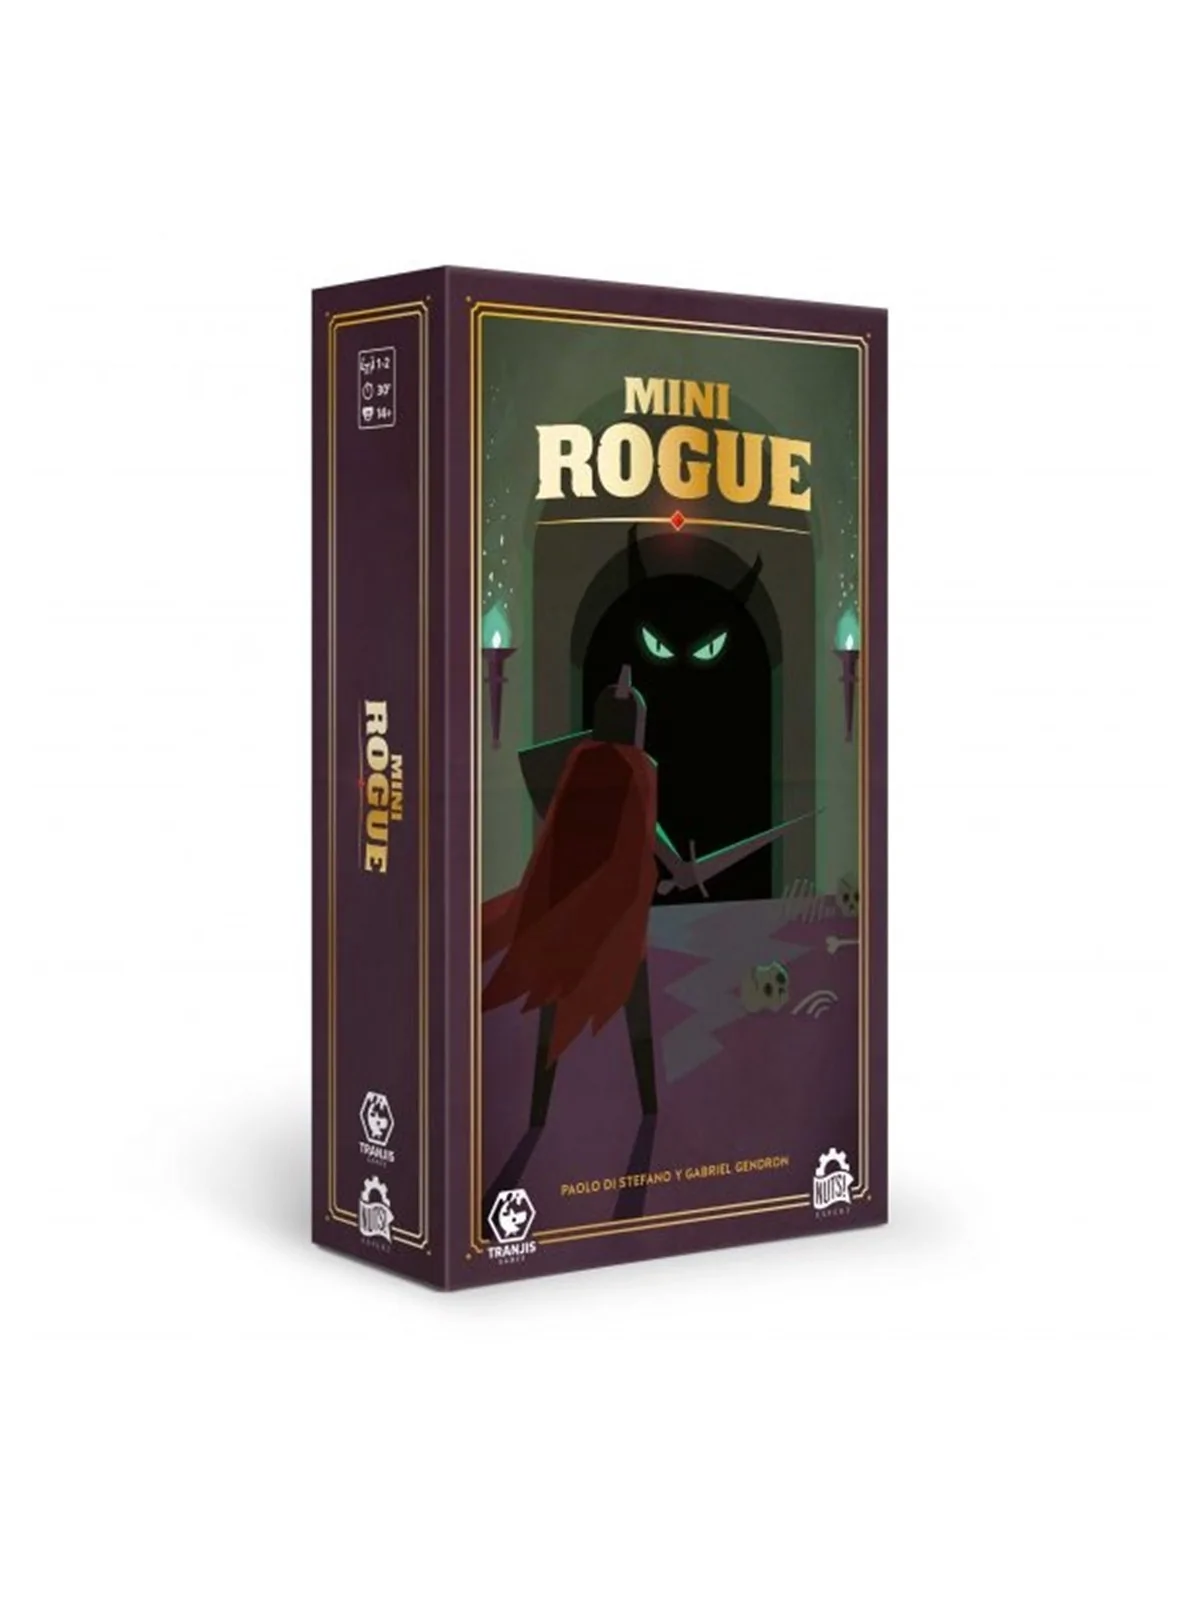 Comprar Mini Rogue barato al mejor precio 19,52 € de Tranjis games sl